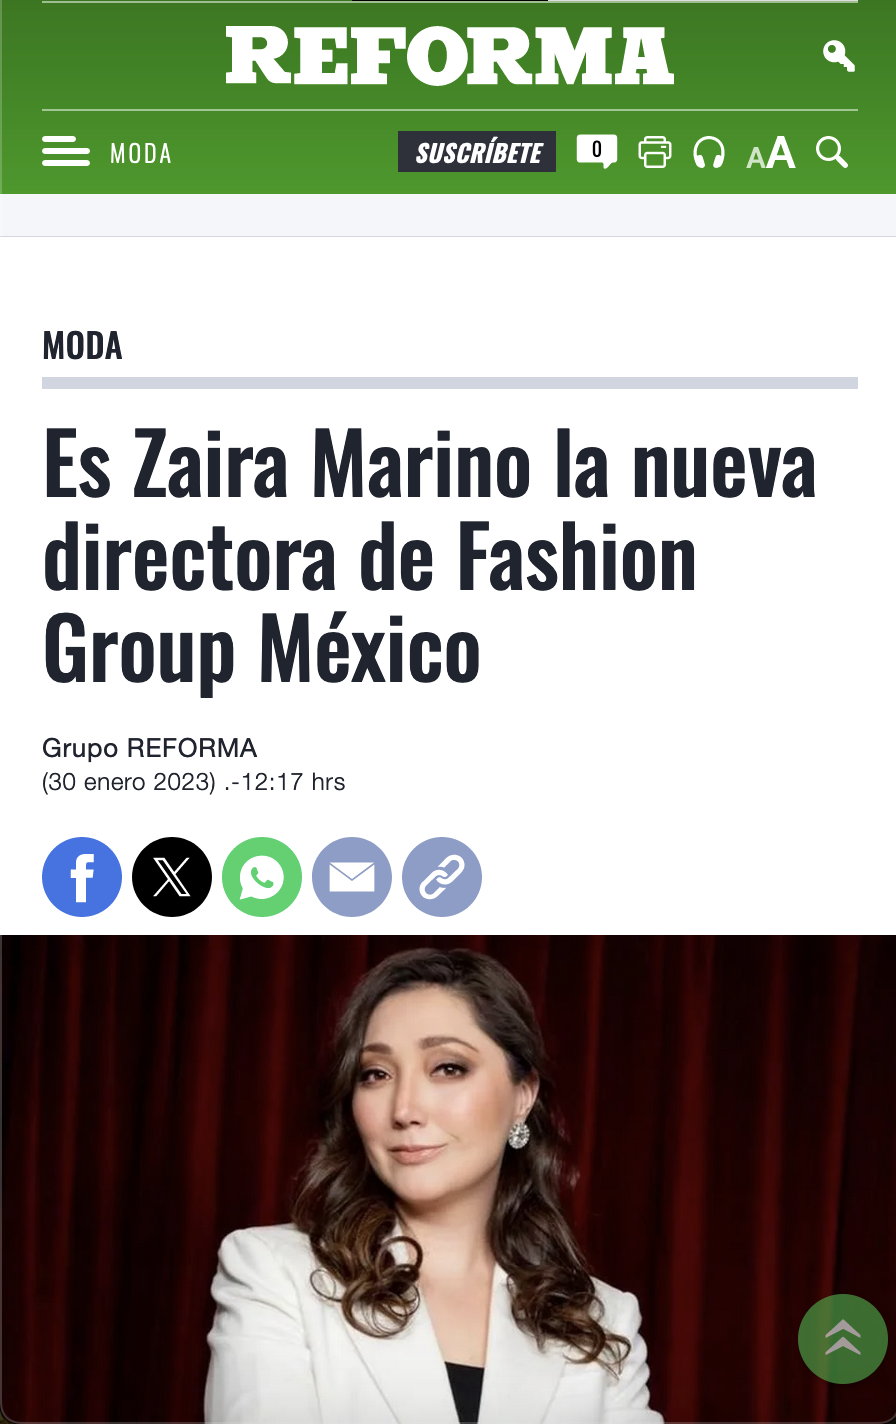 Huawei y Fashion Group of Mexico realizan conferencias sobre moda por Instagram